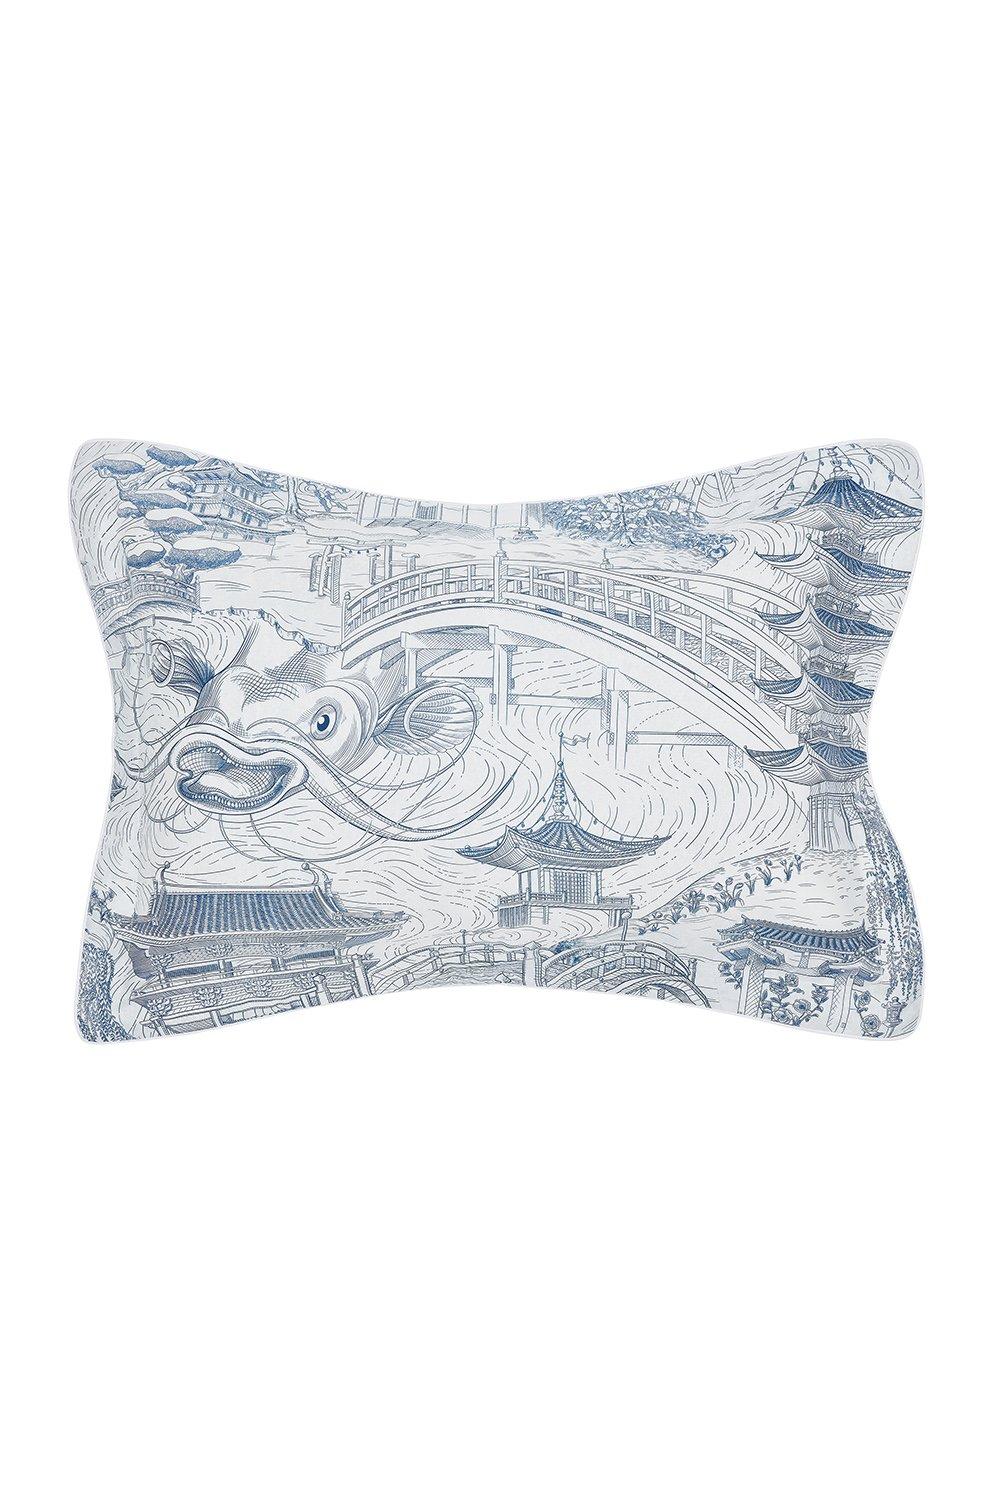 'Eastern Palace' Egyptian Cotton Oxford Pillowcase